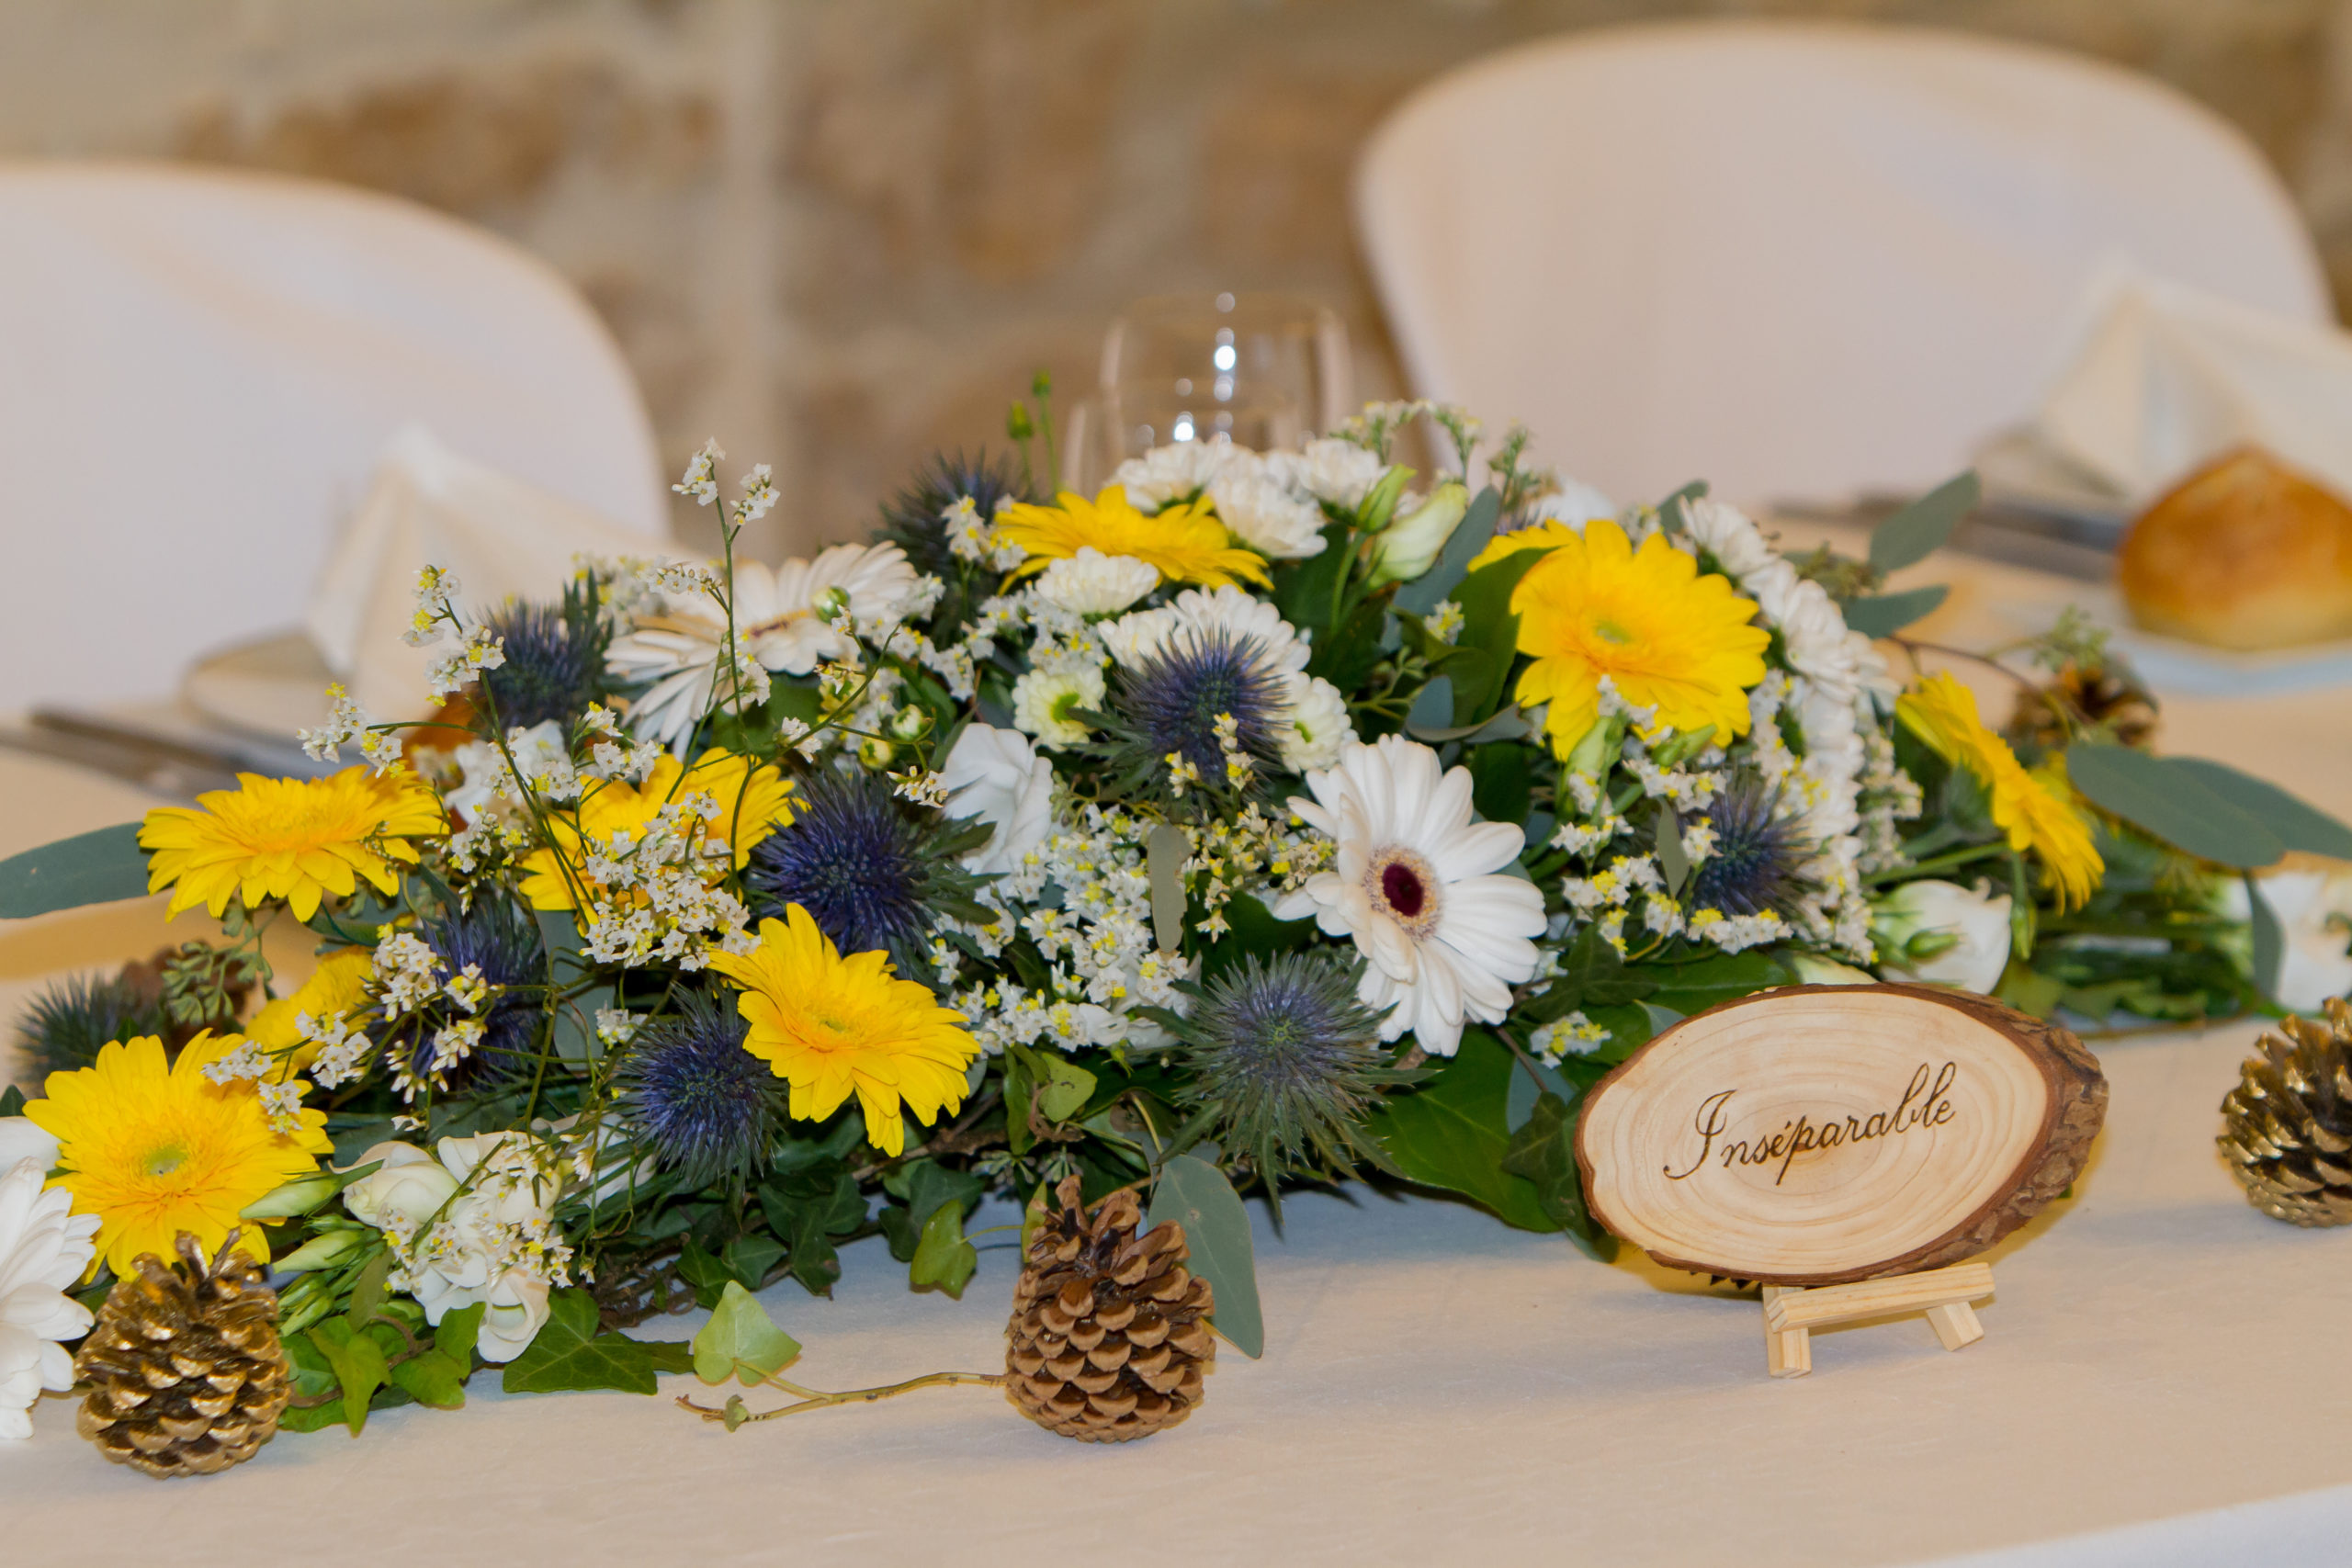 Mariage A&J - Centre de table - C&D Events Wedding planner Oise et Paris